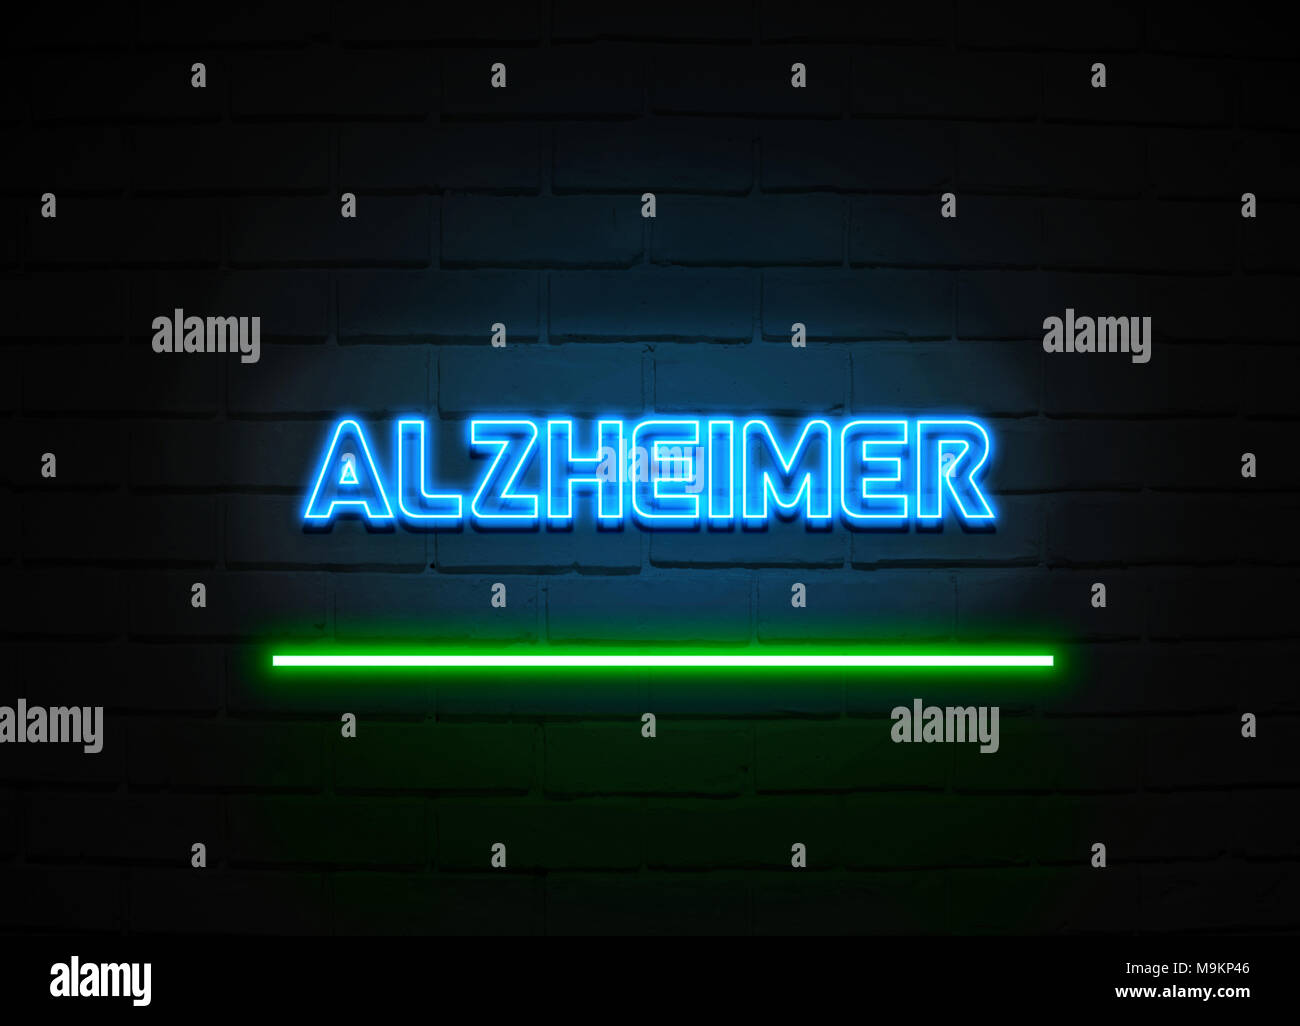 Alzheimer Leuchtreklame - glühende Leuchtreklame auf brickwall Wand - 3D-Royalty Free Stock Illustration dargestellt. Stockfoto